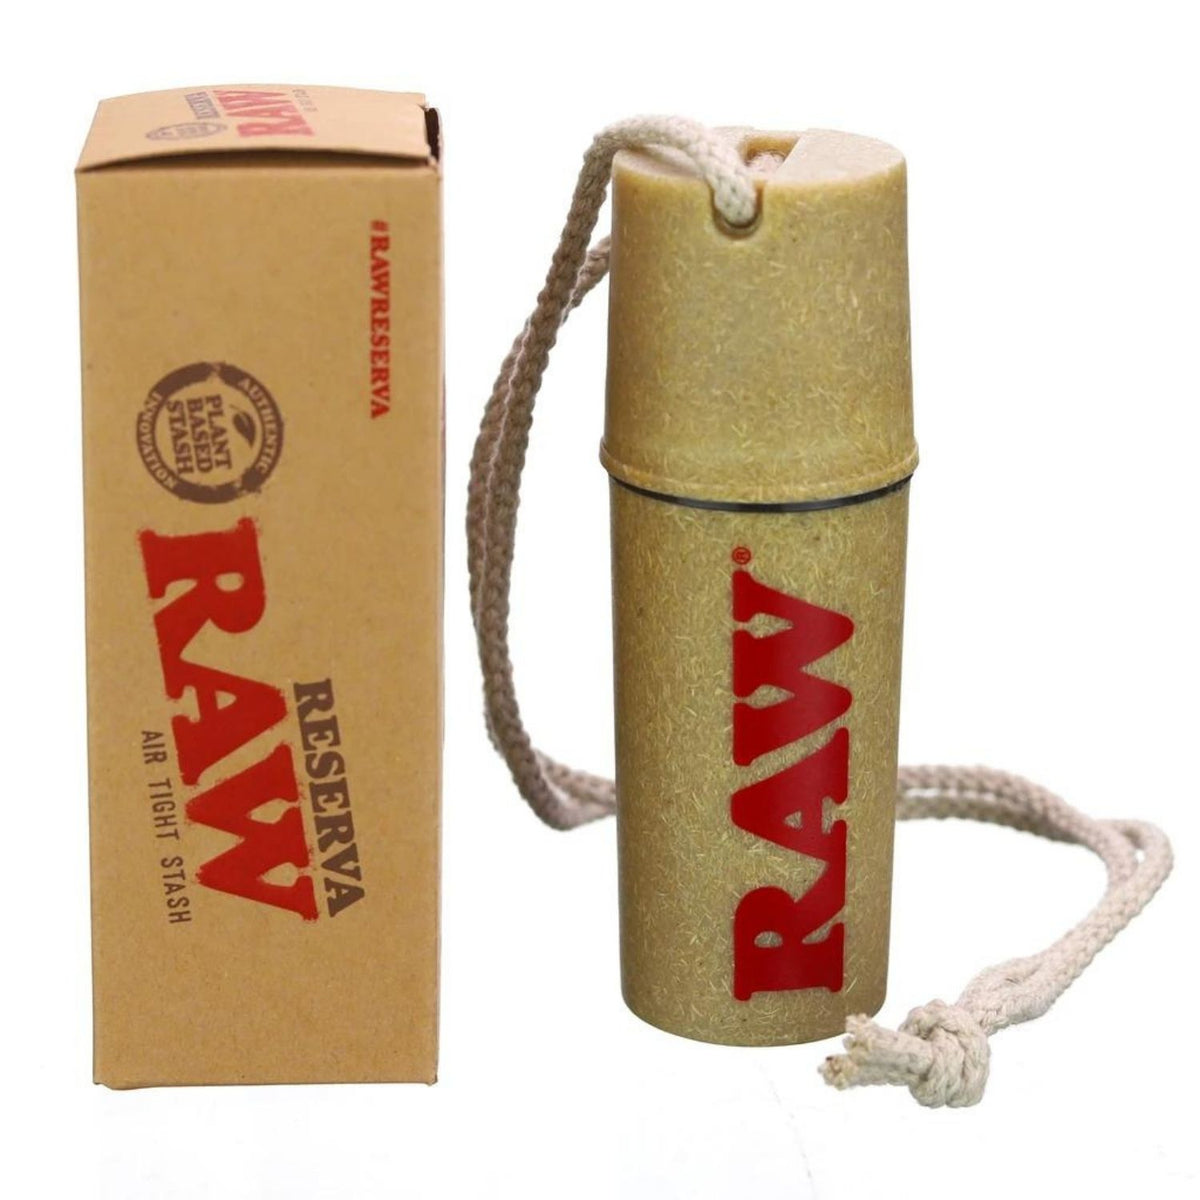 RAW Reserva - Stash Box and Cone Filler